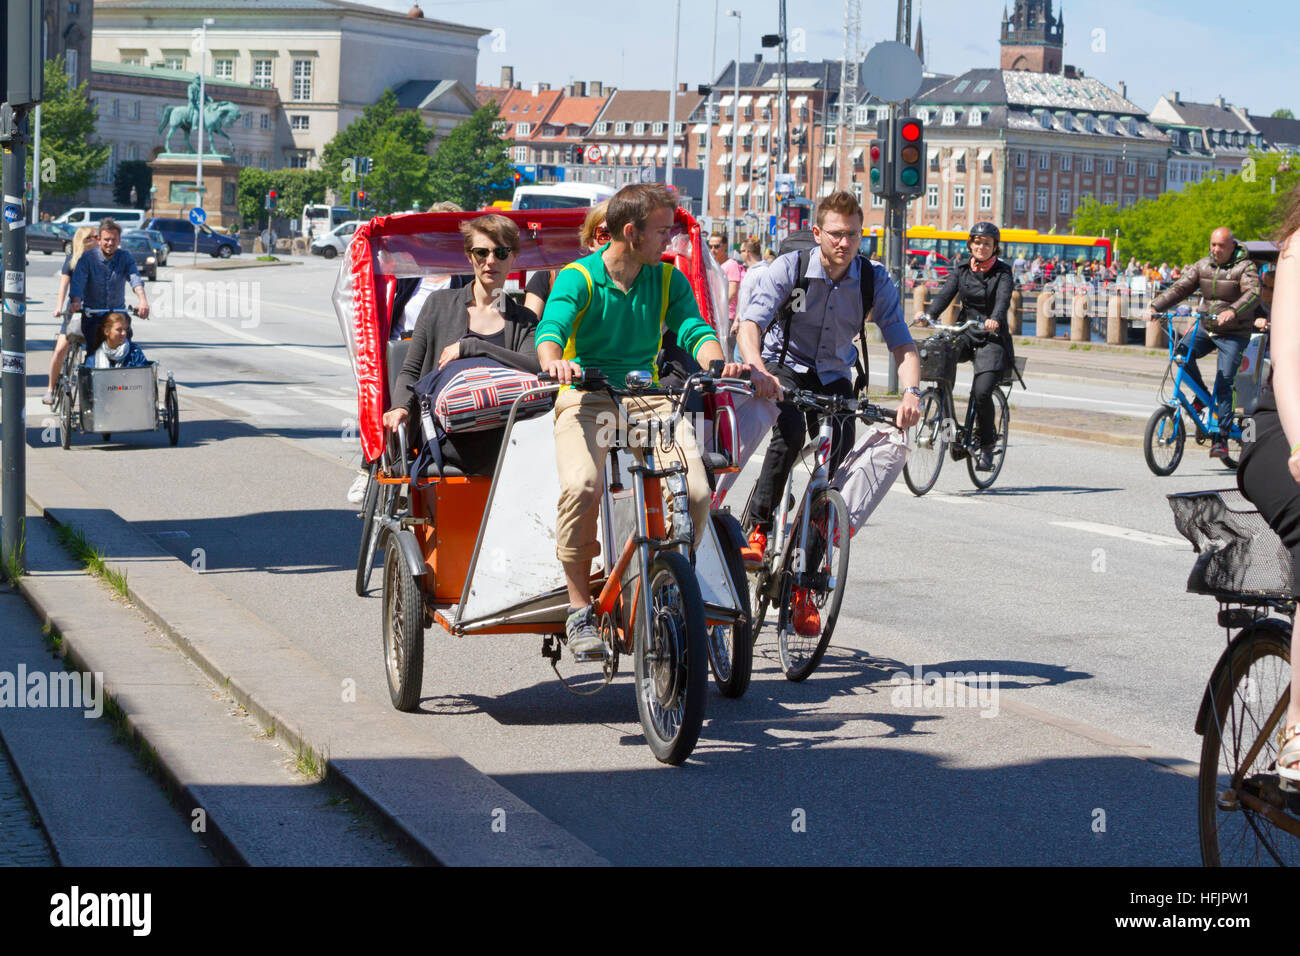 Eine enge Anruf auf belebten Radweg am Børsgade im Zentrum von Kopenhagen. Fahrrad-Taxis und Lastenräder nehmen eine Menge Platz. Dänemark. Radfahrer und Radfahrer. Stockfoto